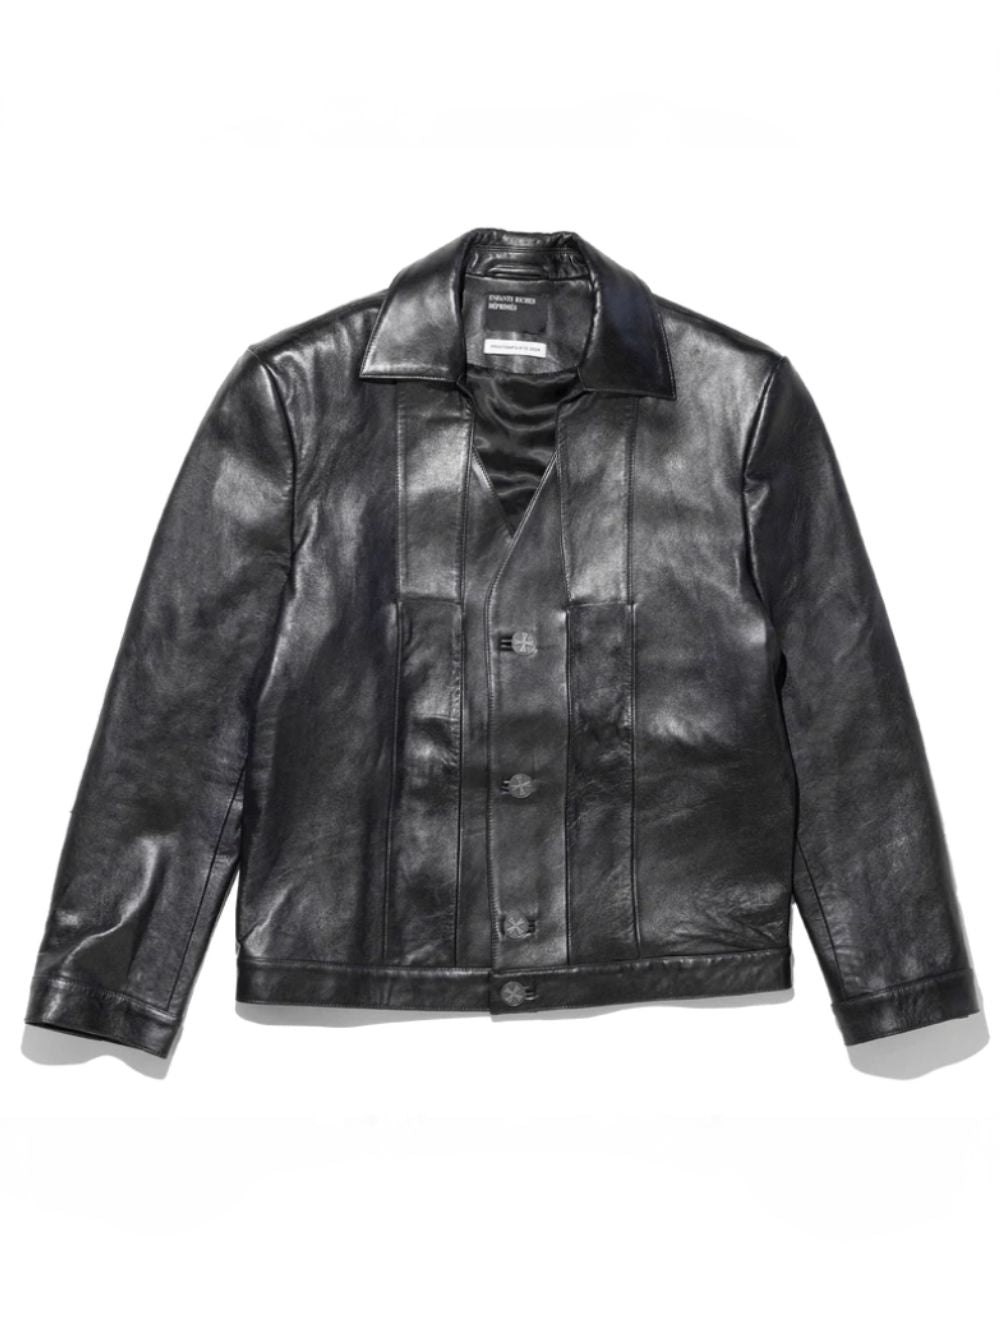 Divorce Leather Jacket